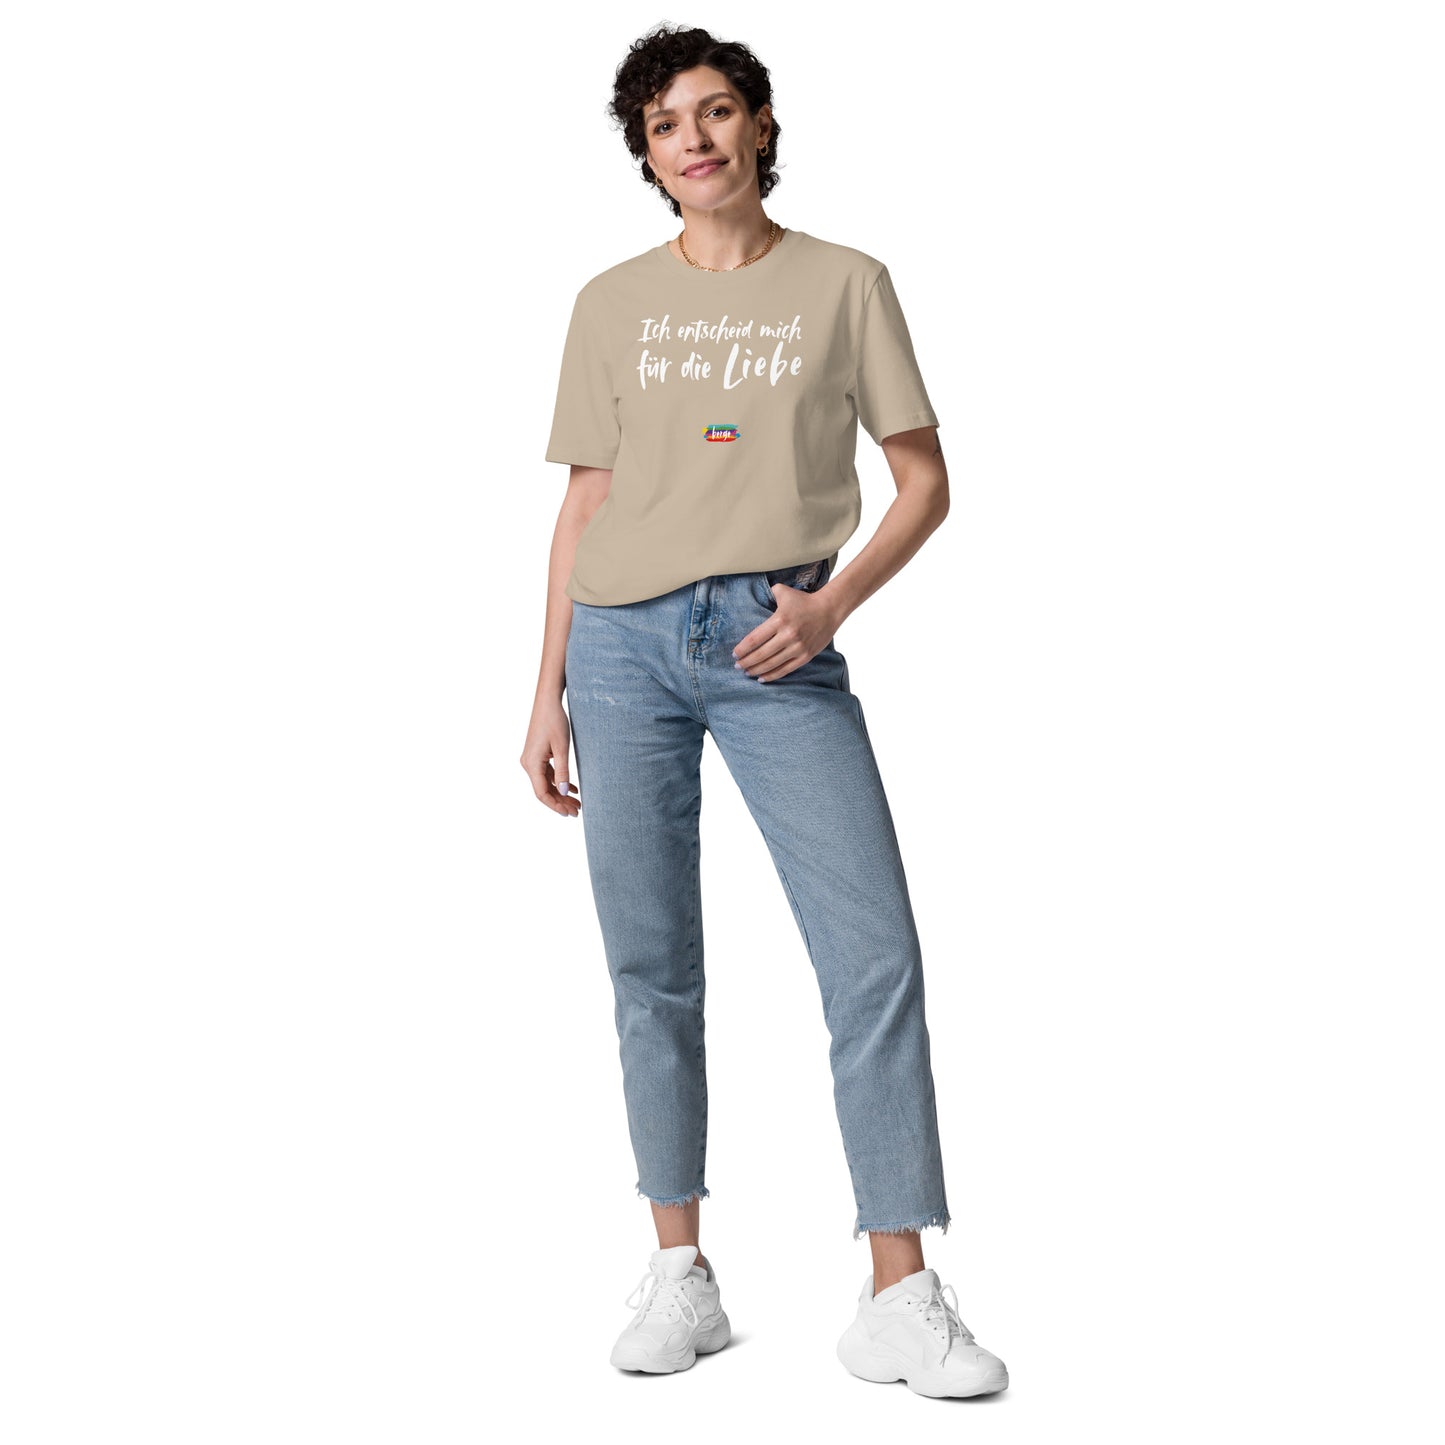 T-Shirt "Für die Liebe" Damen Diverse Farben